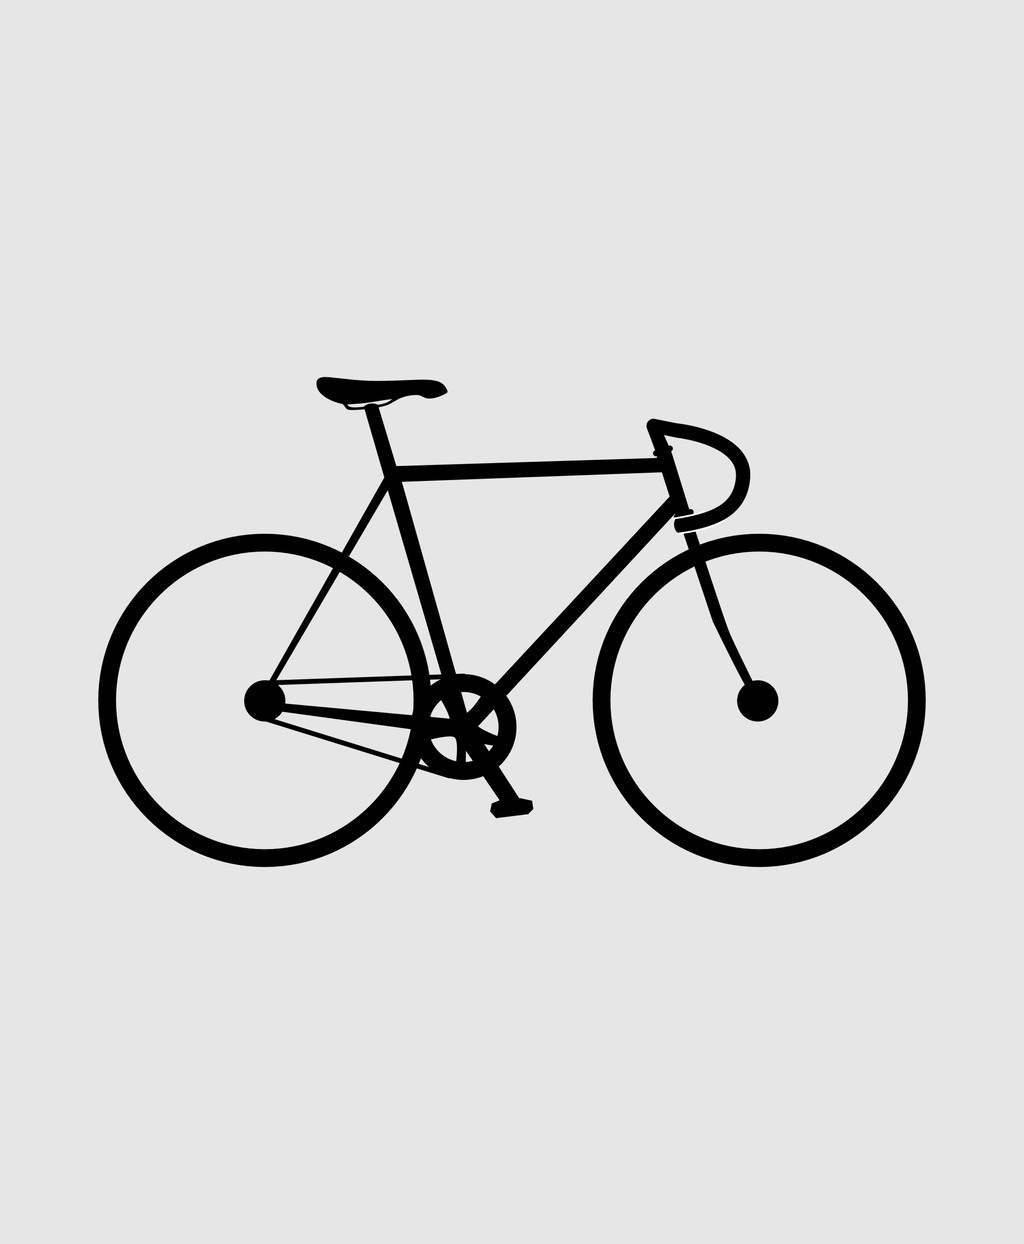 自行车简笔插画交通元素图片设计素材_高清其